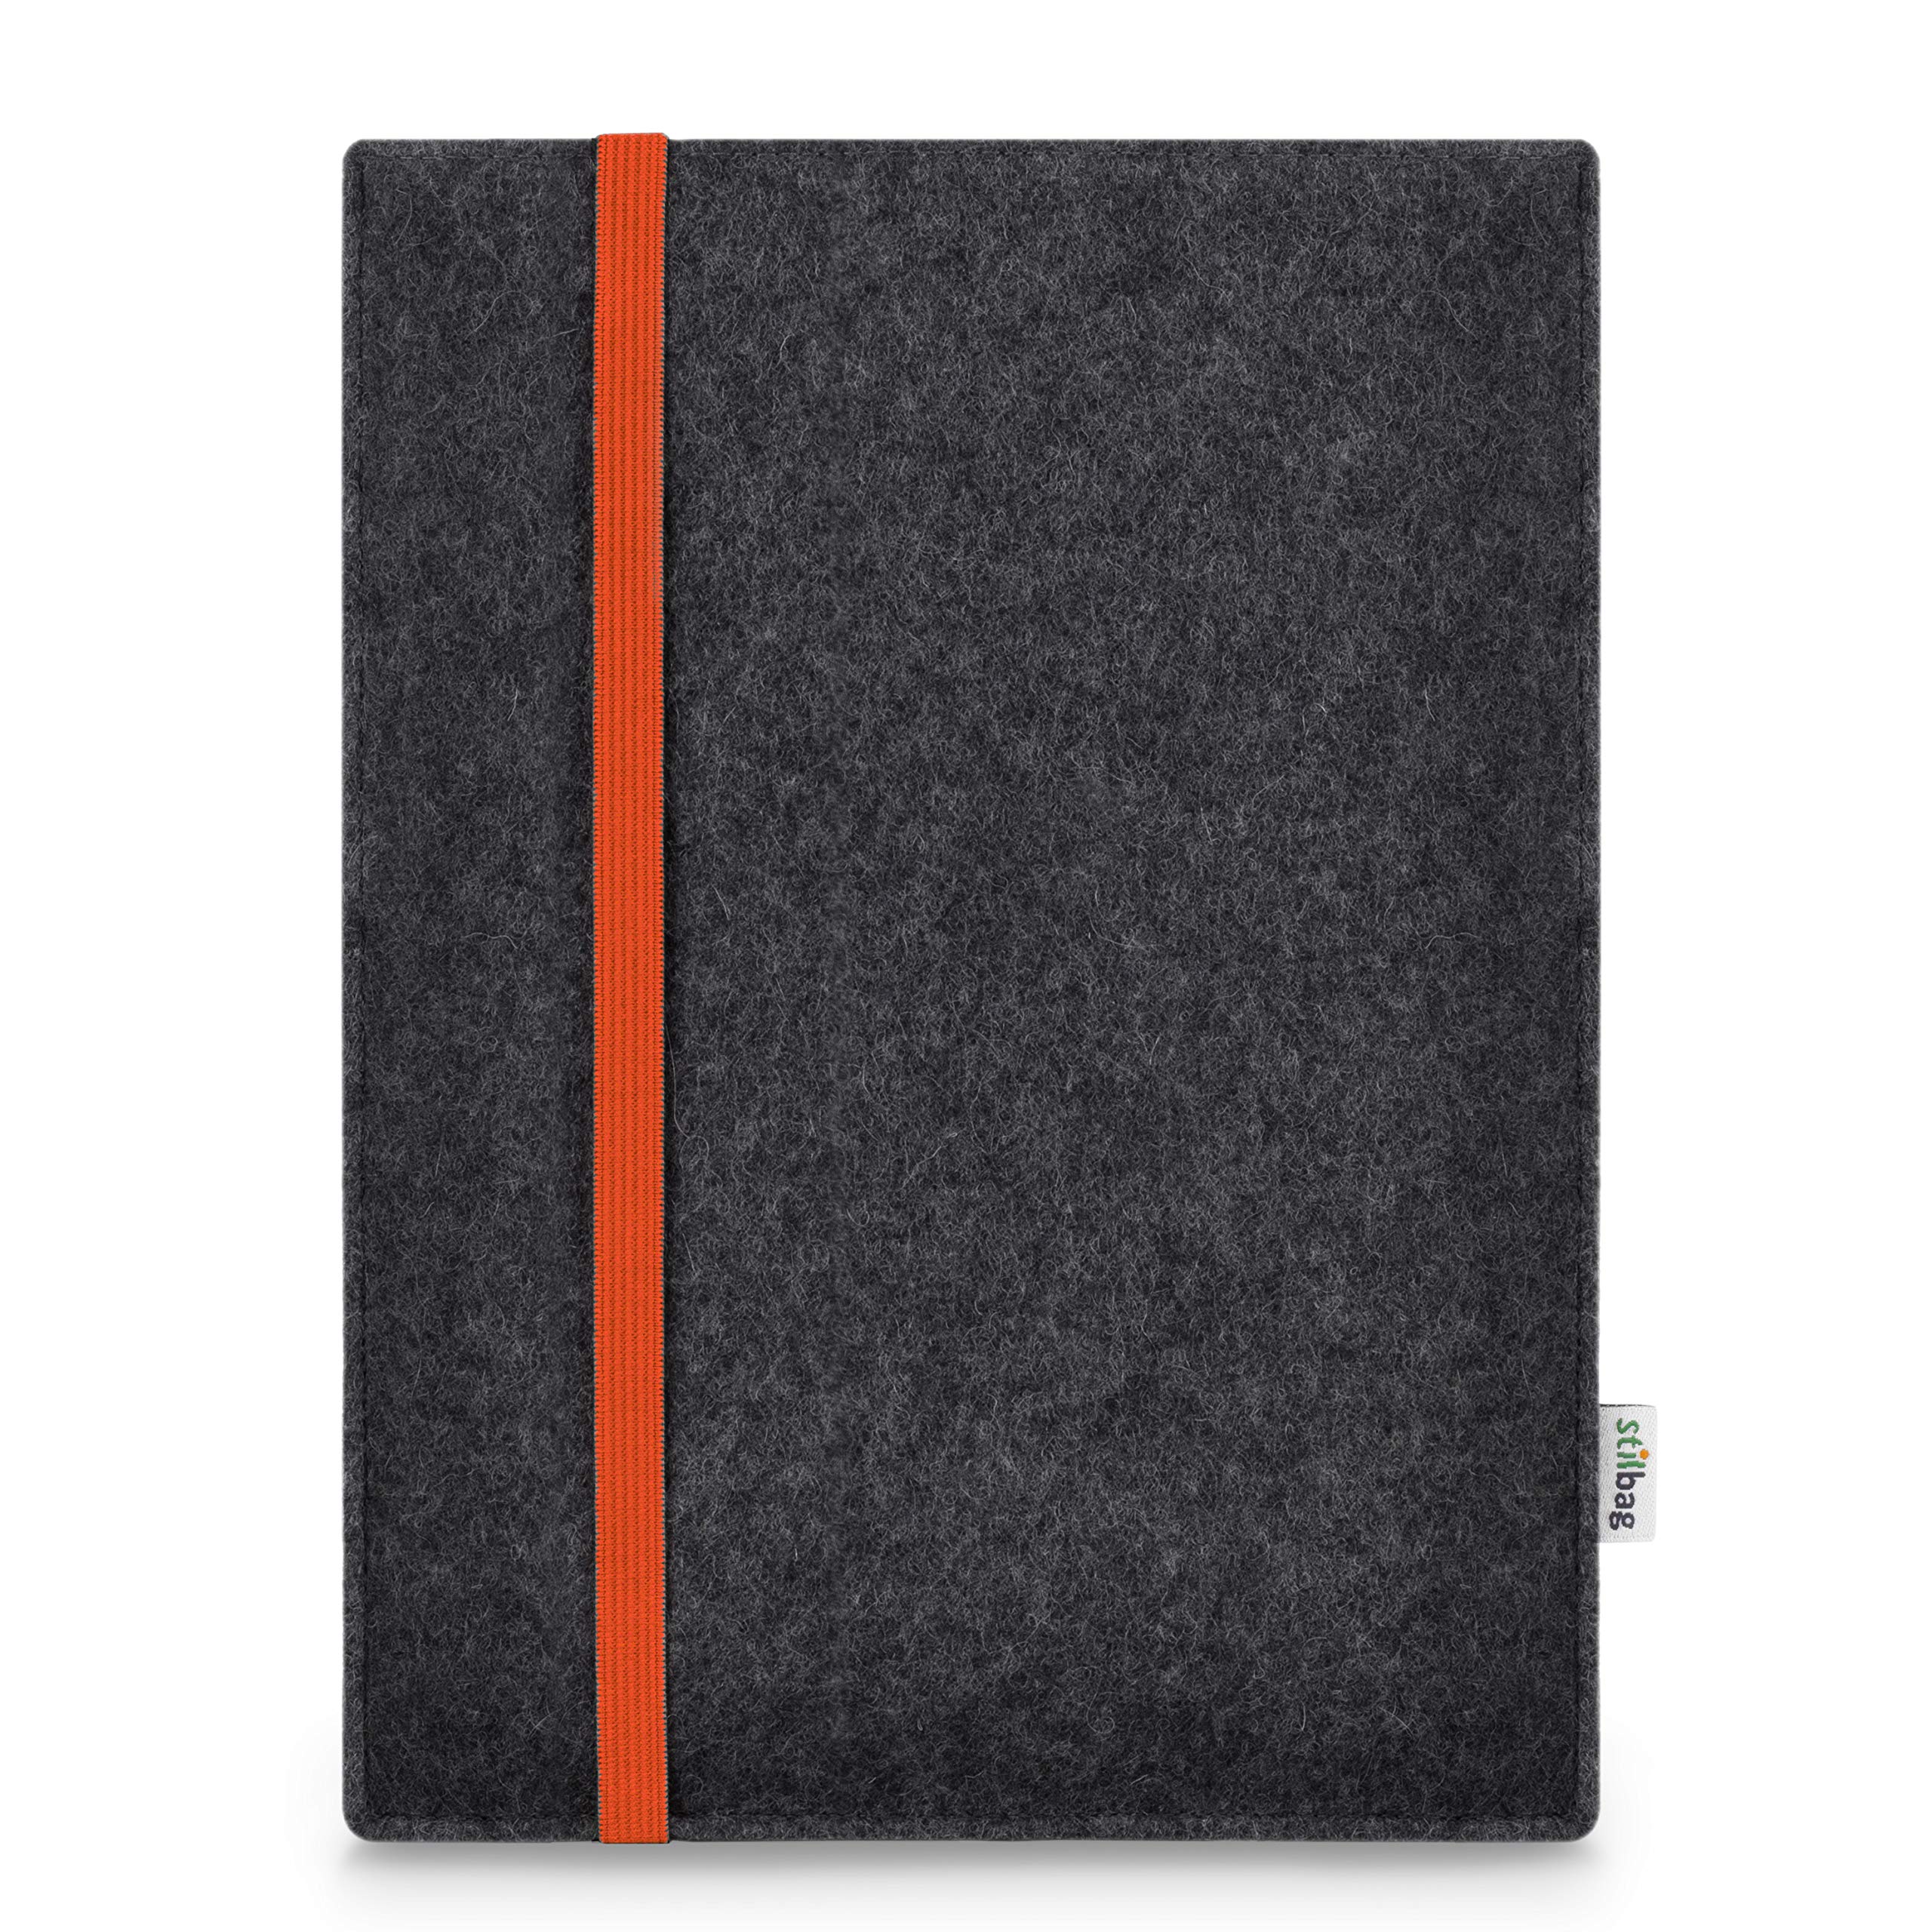 Stilbag Hülle für Huawei MediaPad M5 Lite 10 | Etui Case aus Merino Wollfilz | Modell Leon in anthrazit/orange | Tablet Schutz-Hülle Made in Germany